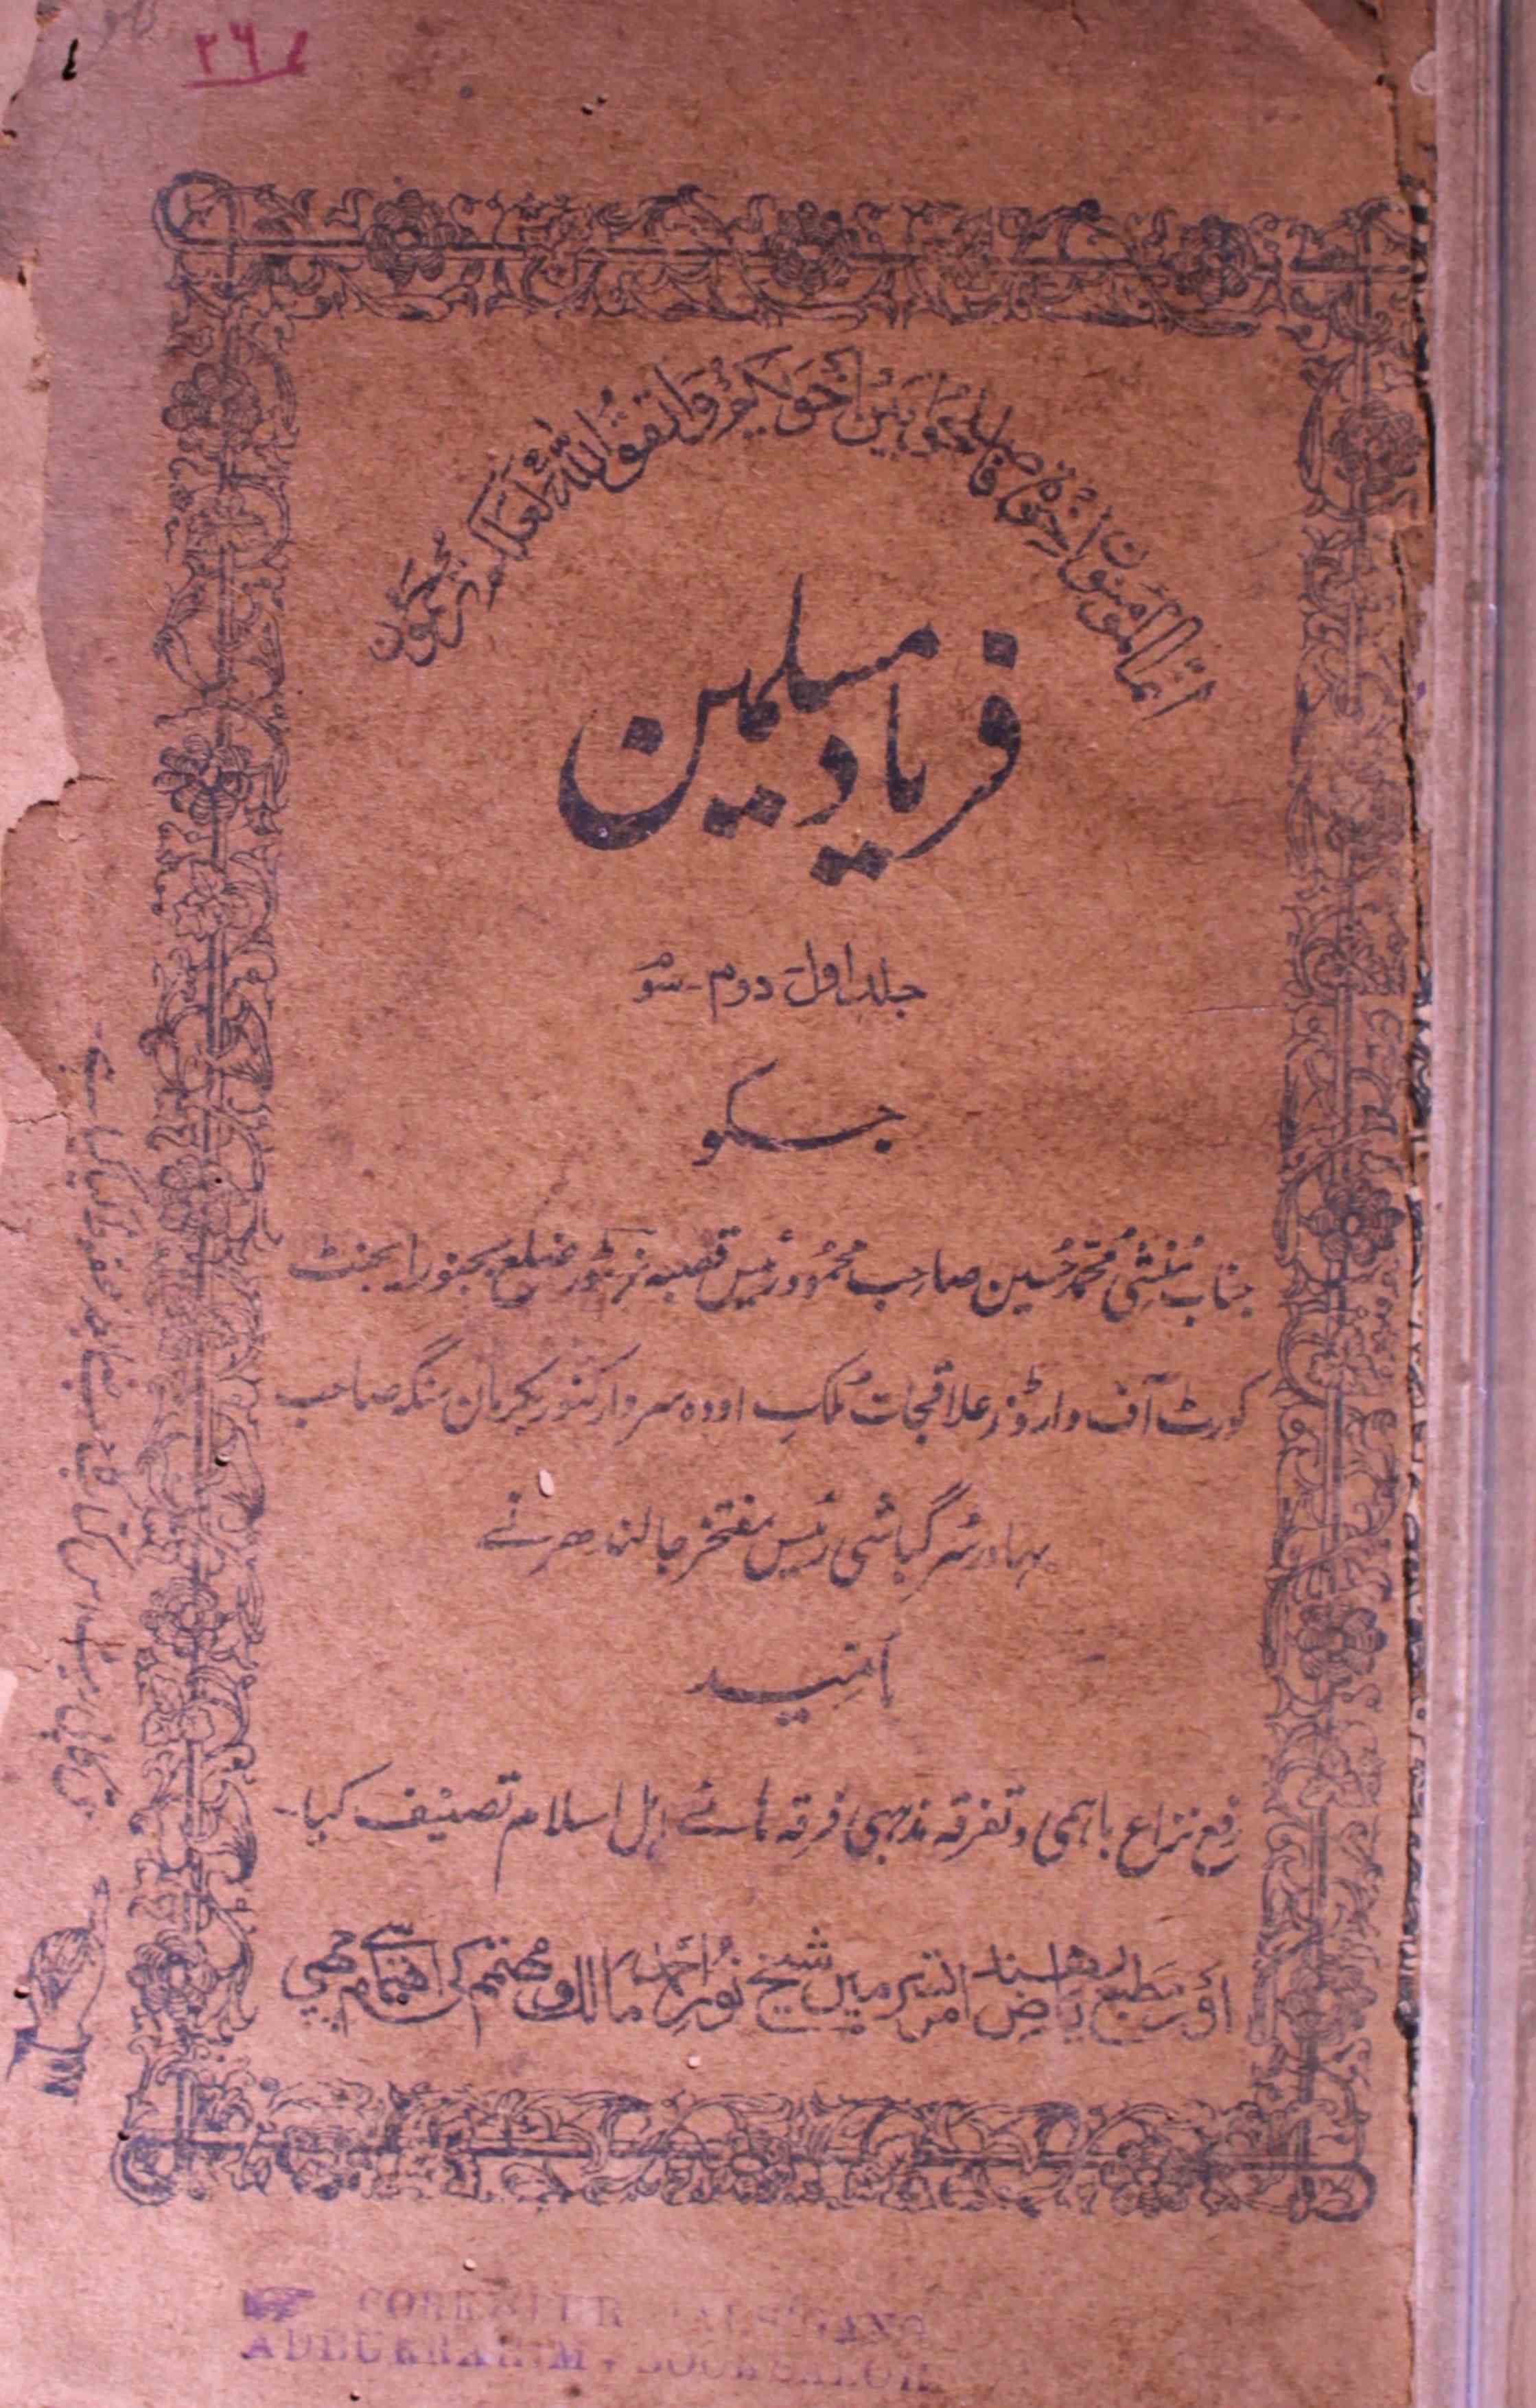 Fariyad-e-Muslimeen